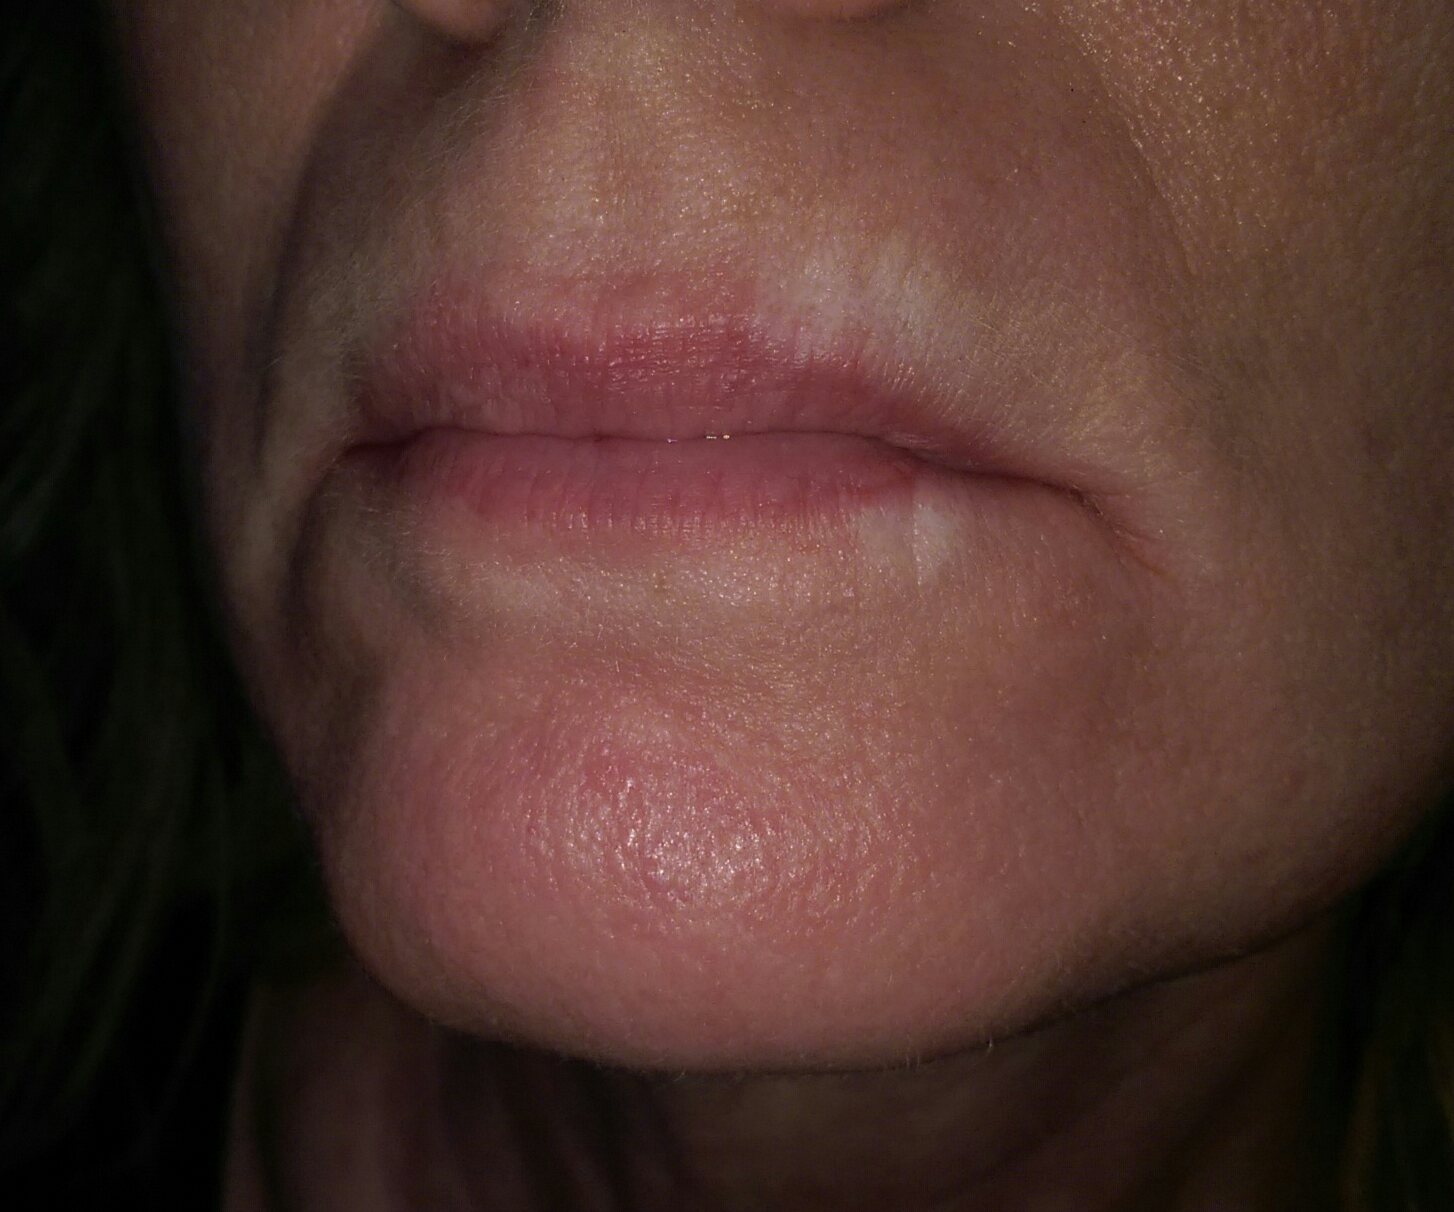 scar on lips